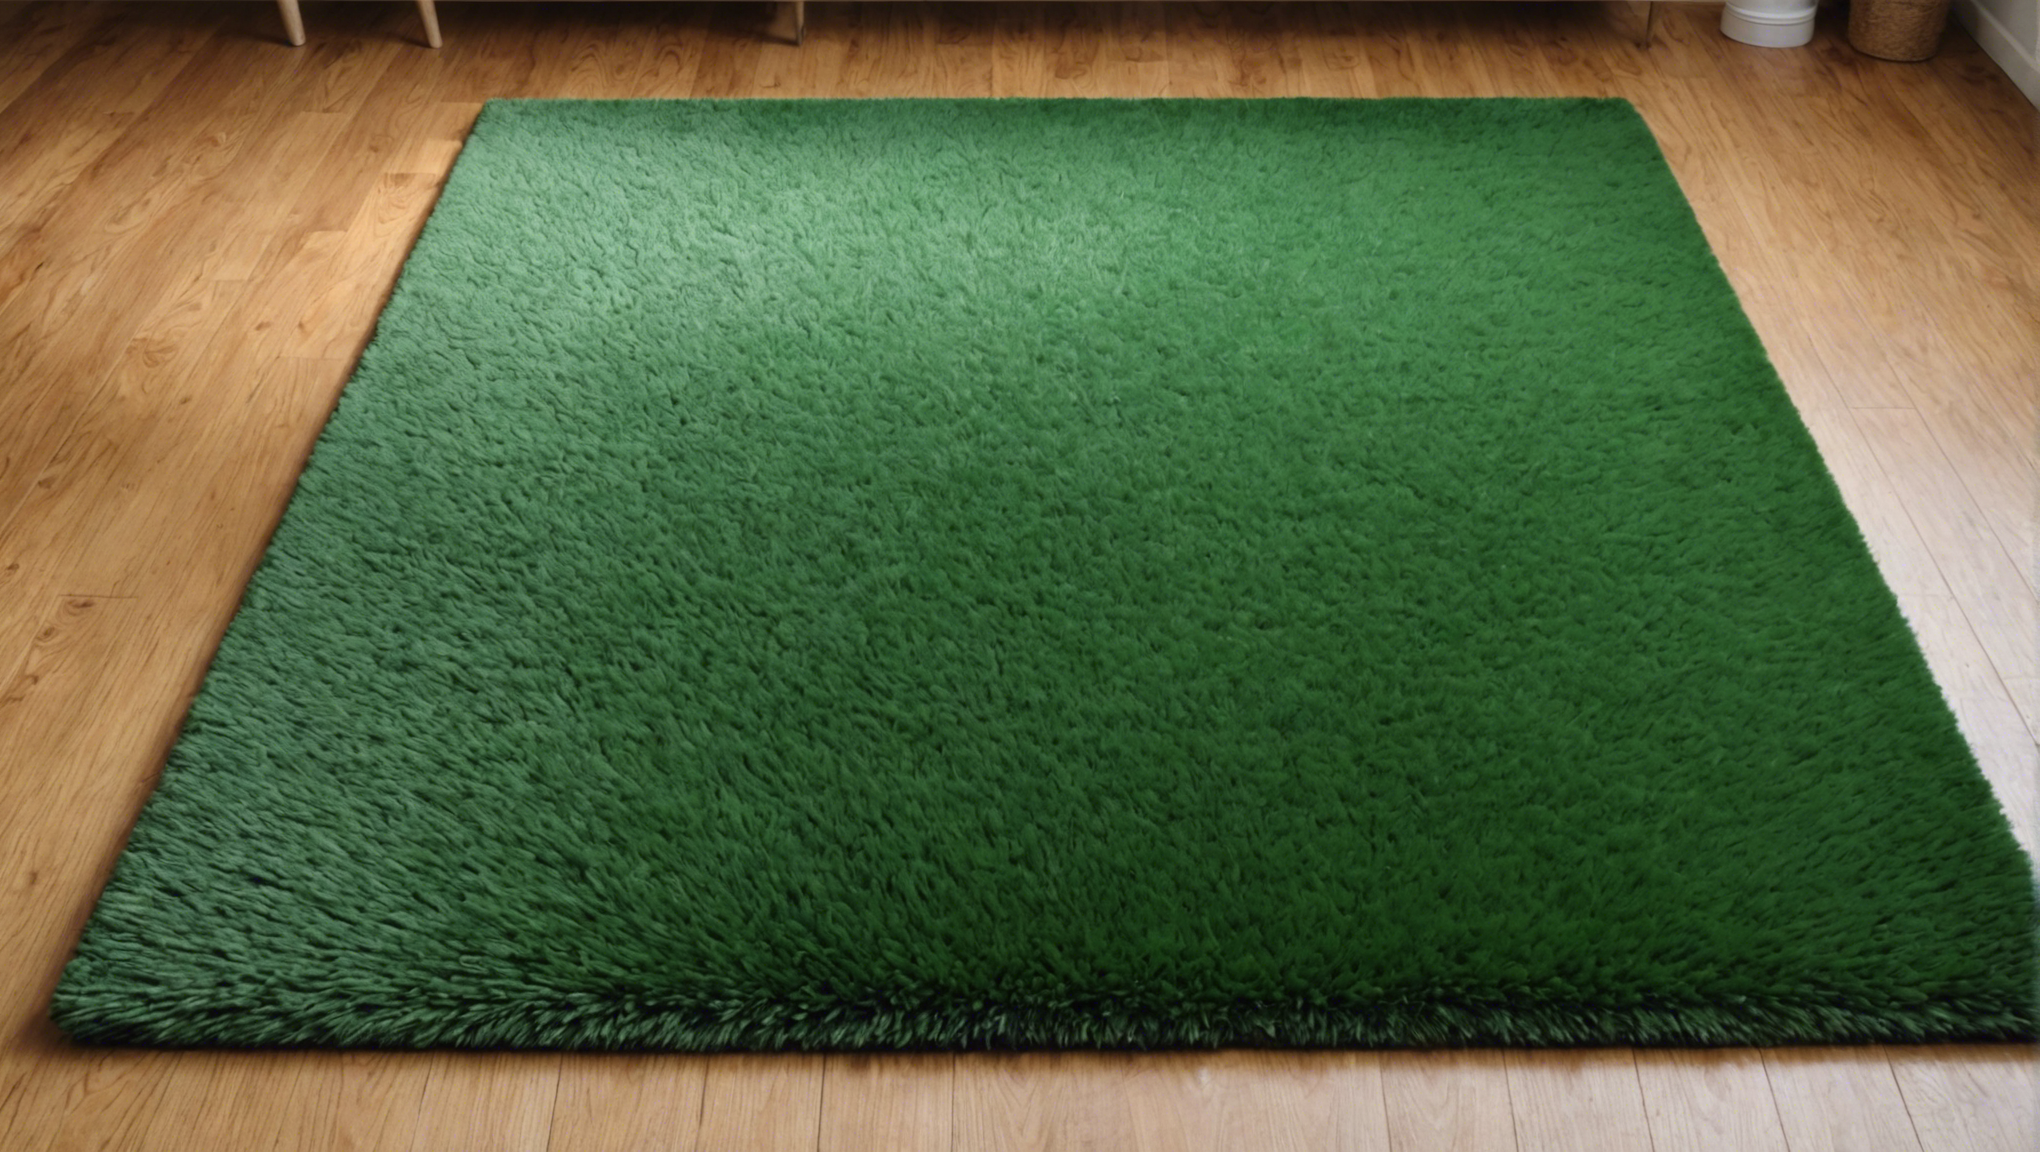 découvrez les étapes pour transformer une friche en un tapis vert luxuriant et profitez d'un espace verdoyant et apaisant dans votre environnement.